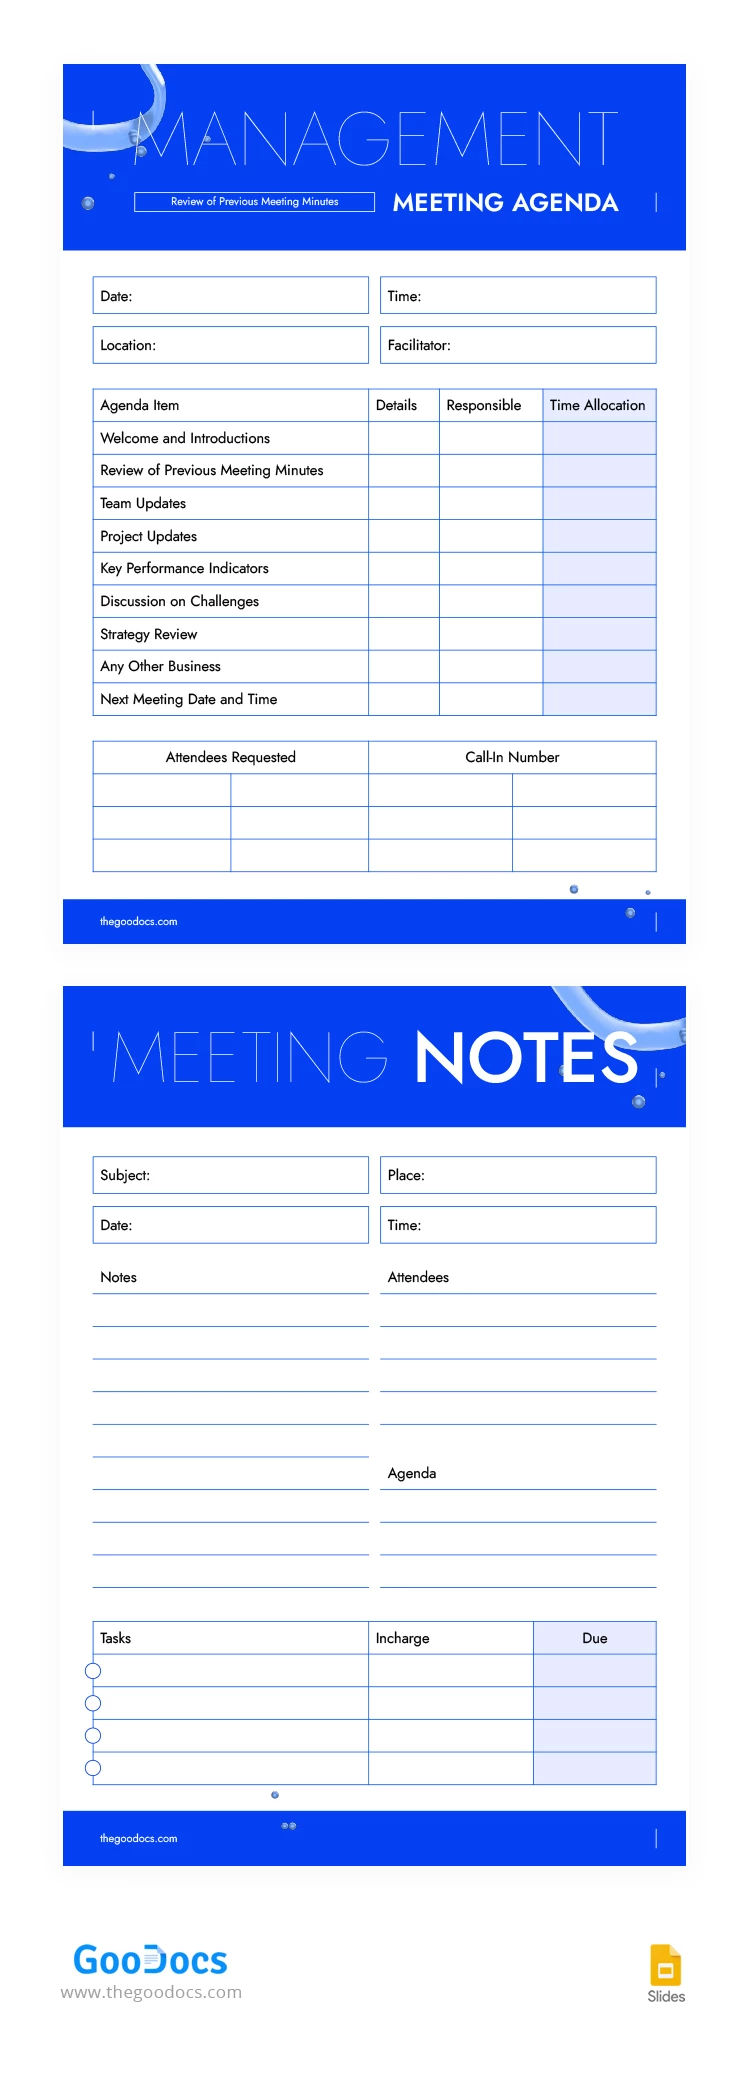 Agenda de reunión de gestión moderna - free Google Docs Template - 10068319